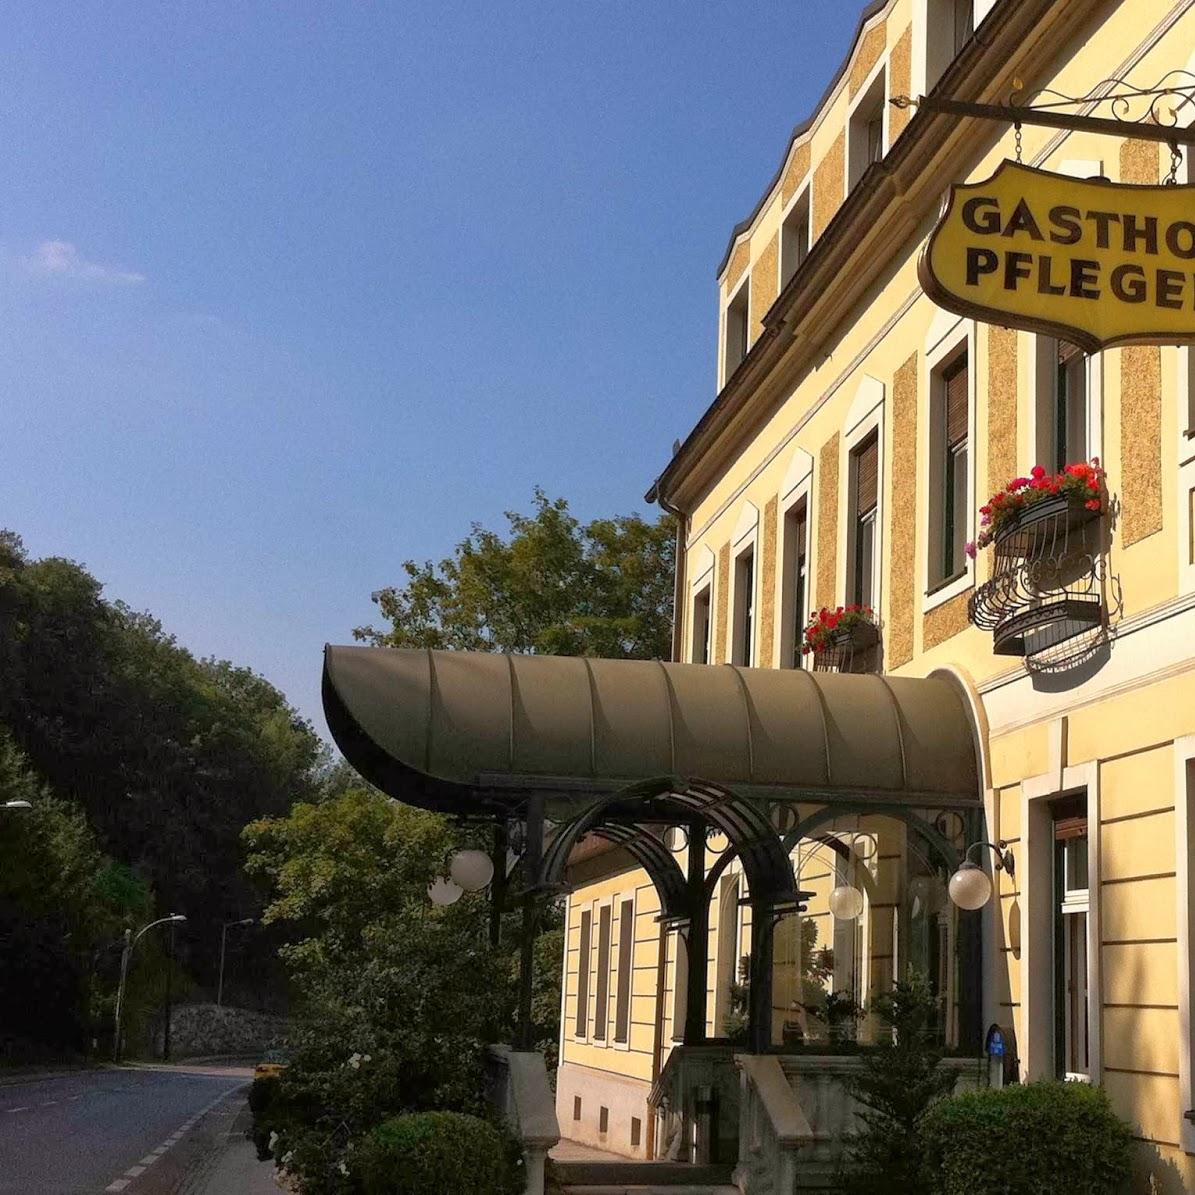 Restaurant "Gasthof Pfleger" in Graz